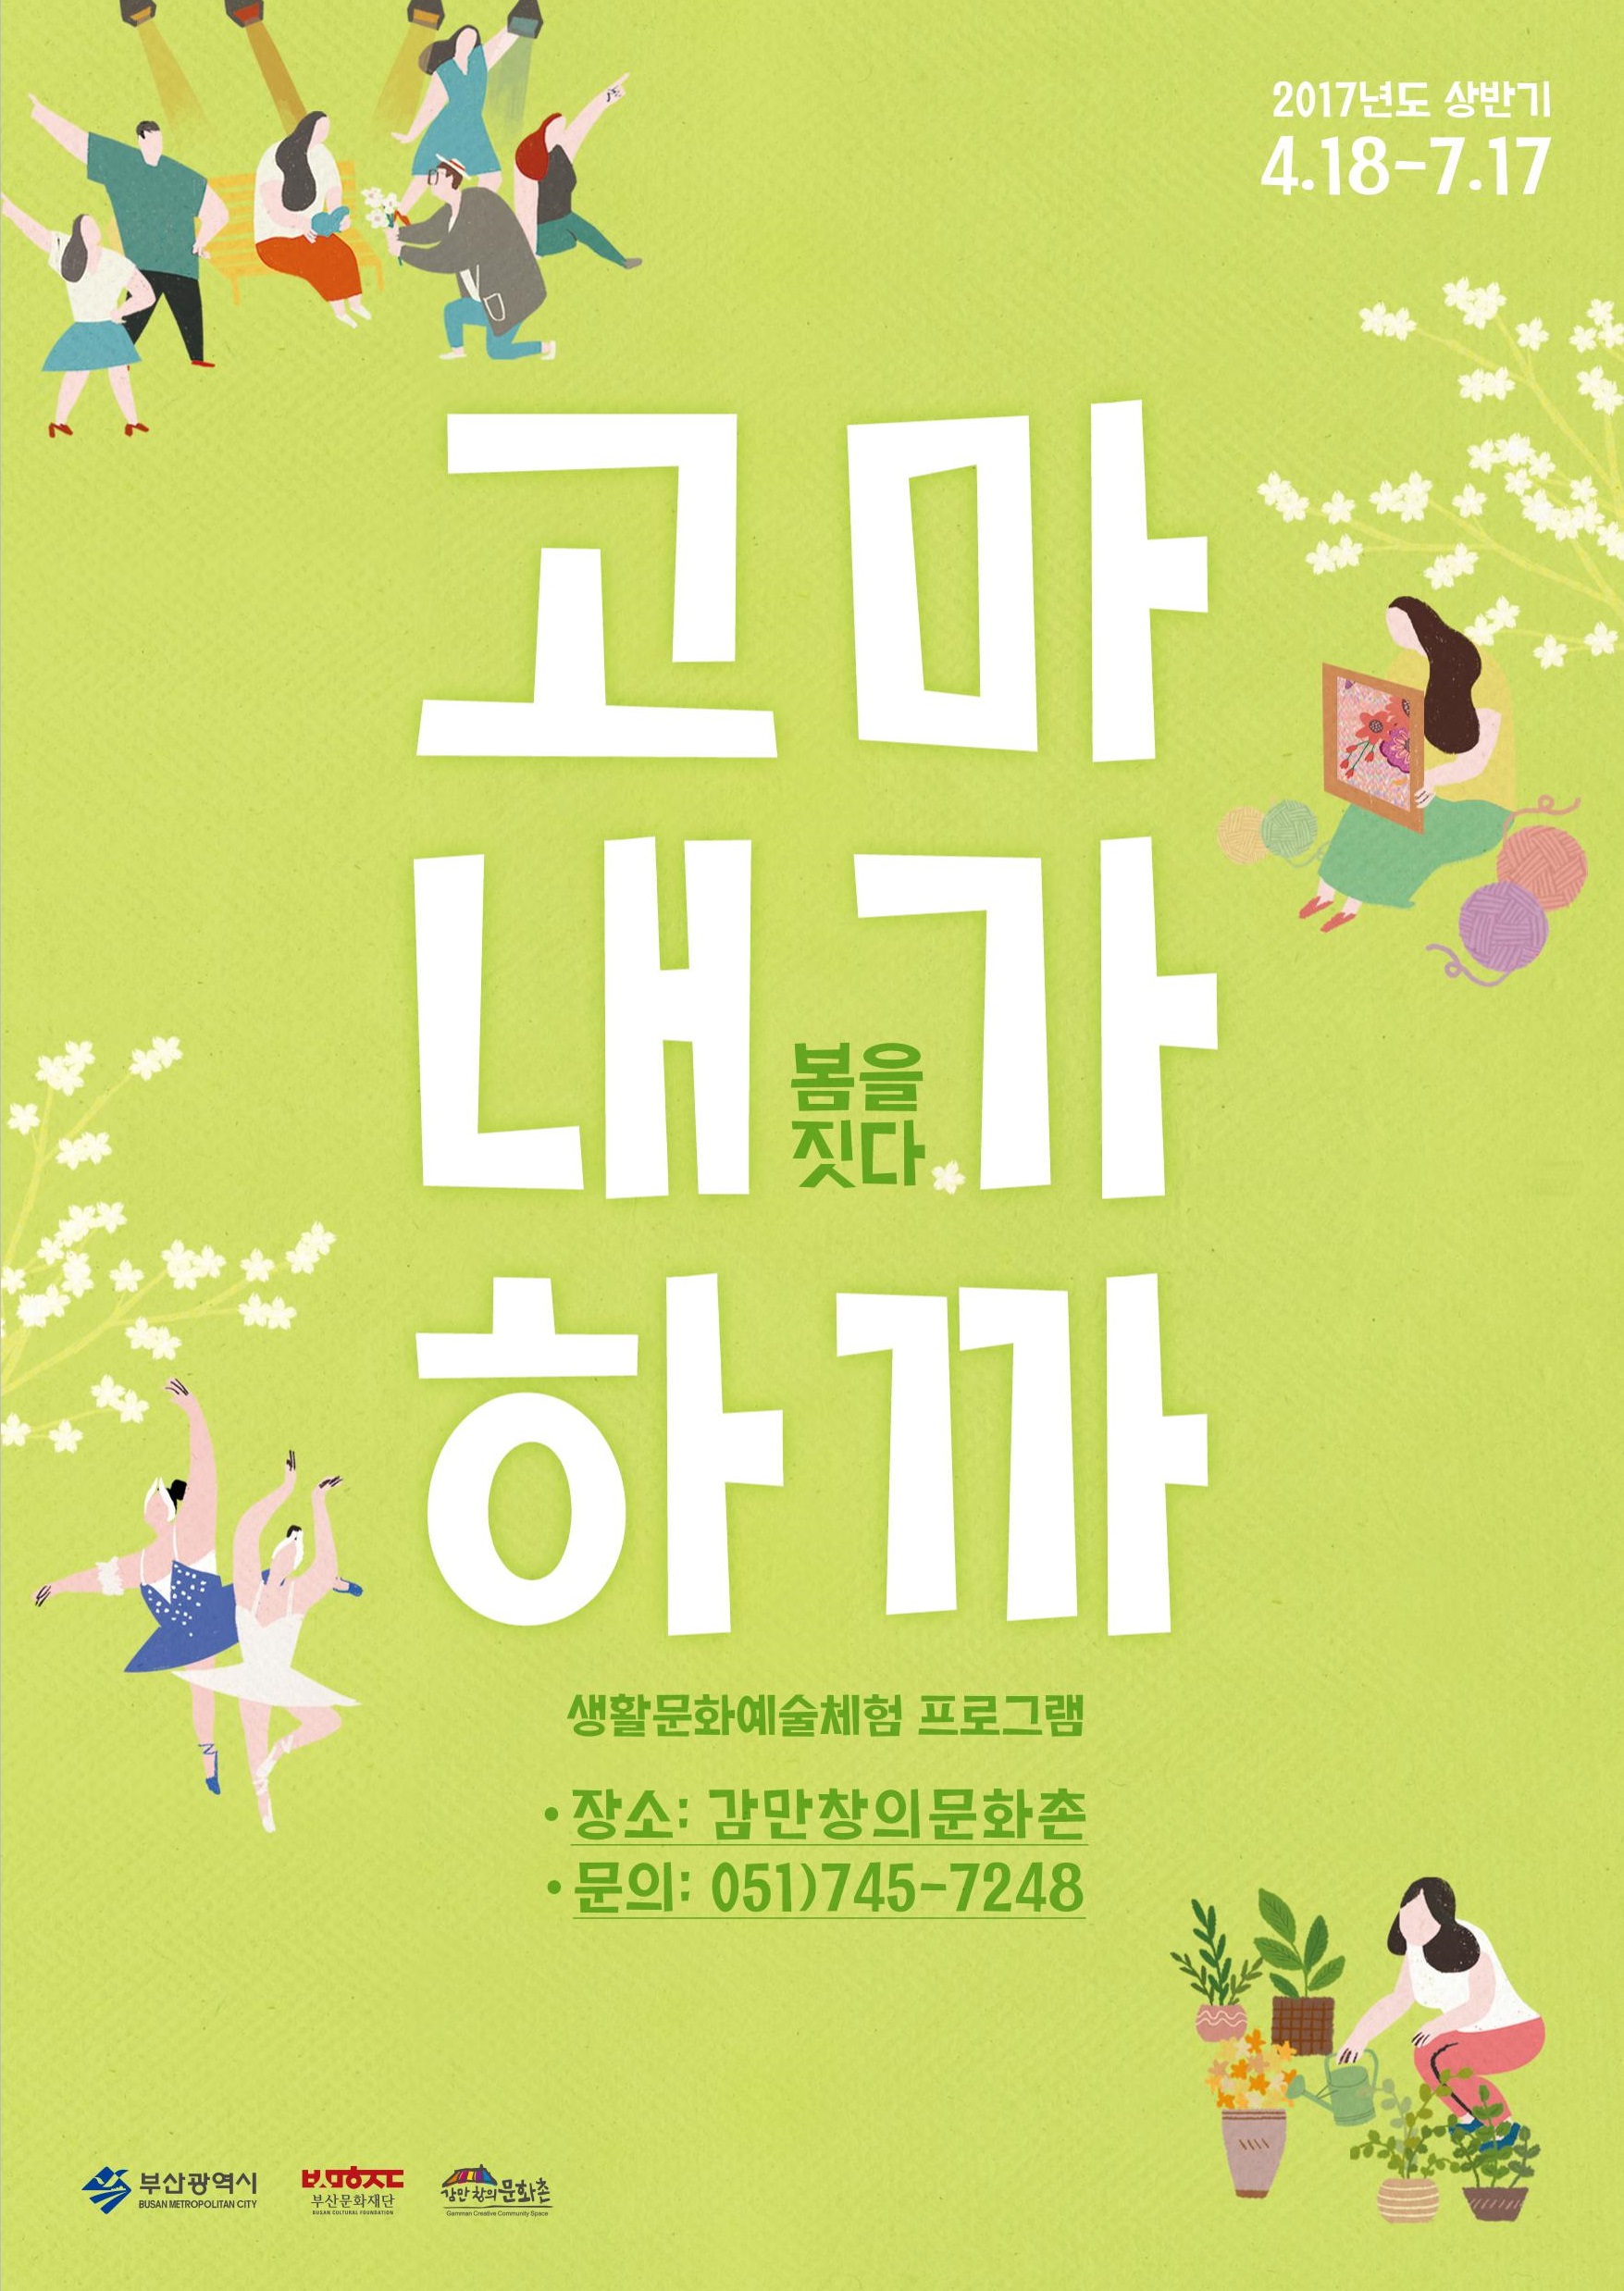 2017년 고마내가하까 포스터.jpg